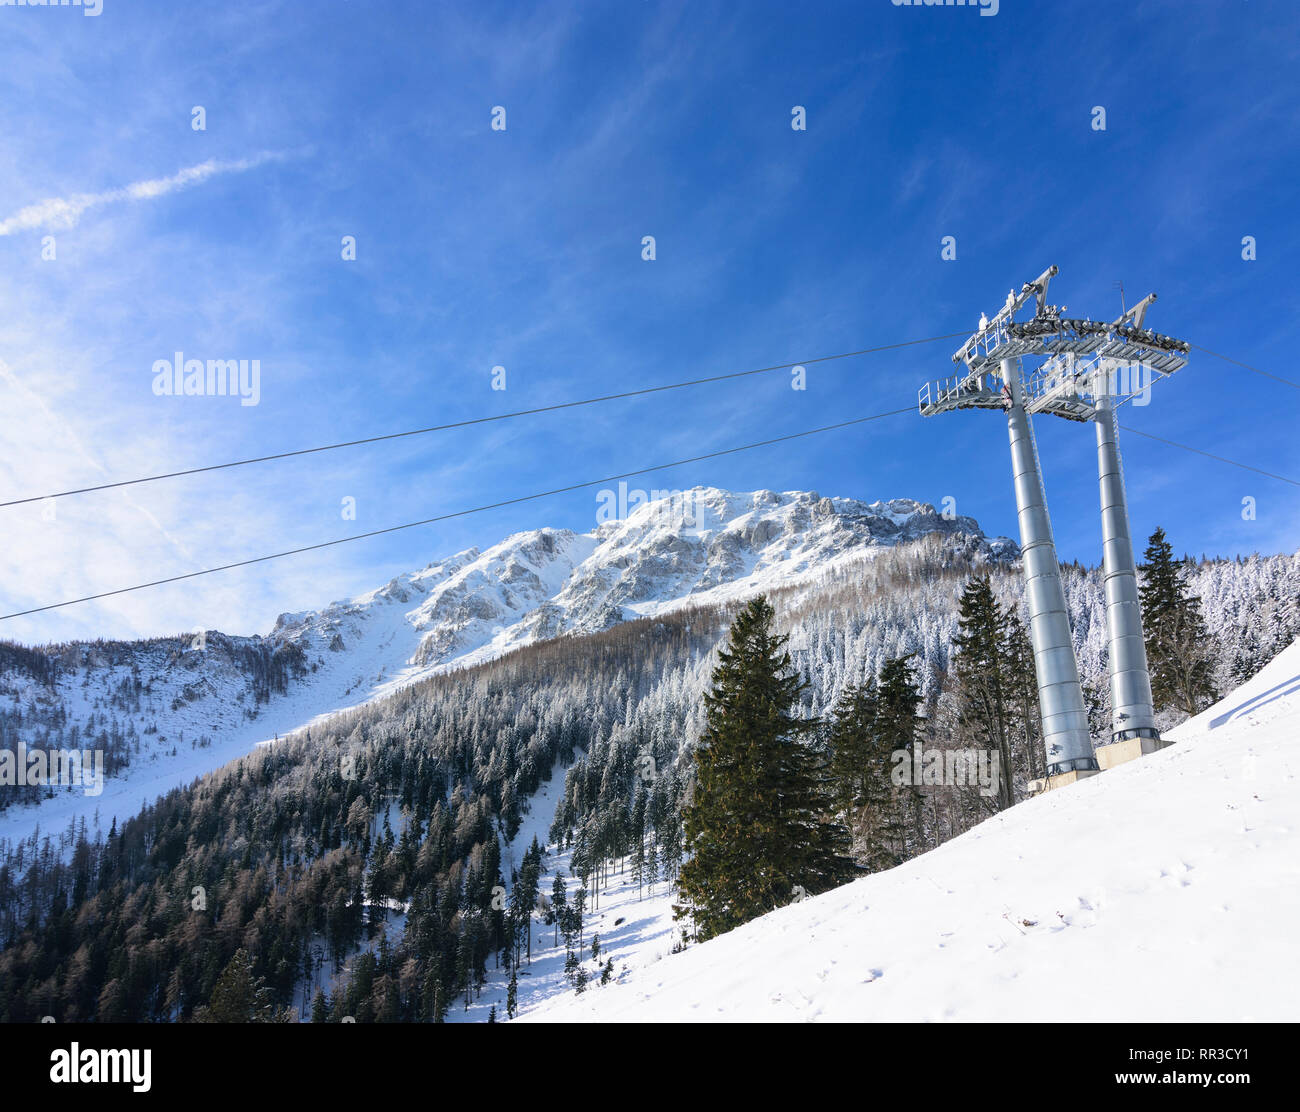 Puchberg am Schneeberg: mountain Schneeberg, cable car, ski lift in Wiener Alpen, Alps, Niederösterreich, Lower Austria, Austria Stock Photo